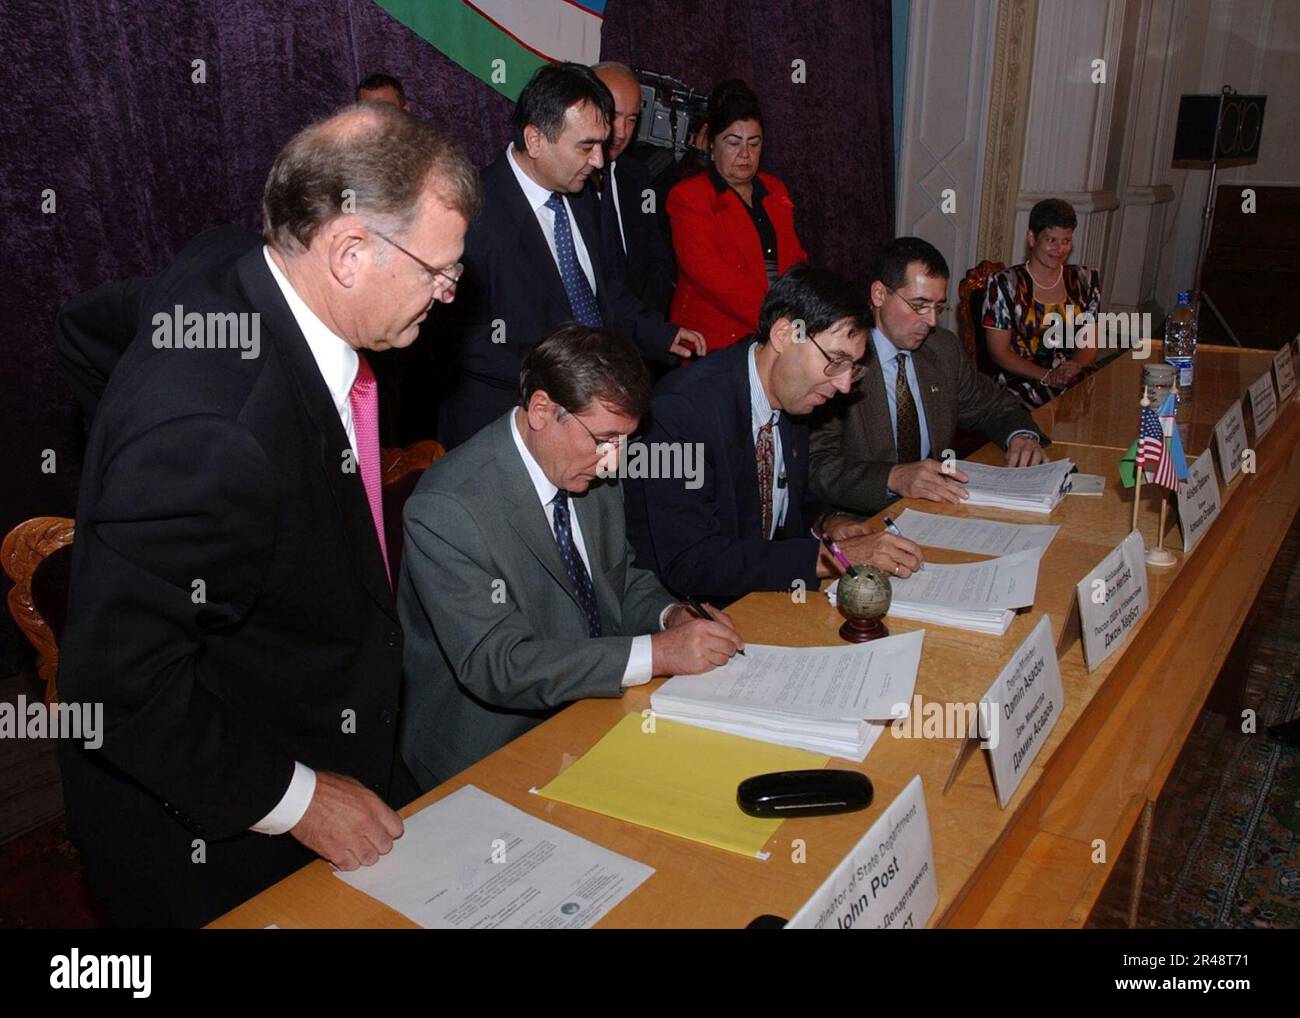 US Navy John Herbst, Stati Uniti Ambasciatore in Uzbekistan e Hakim Alisher A. Atabaev, sindaco della regione di Fargana, firmano i documenti ufficiali sul fatturato tra la repubblica di Uzbekistan e gli Stati Uniti Foto Stock